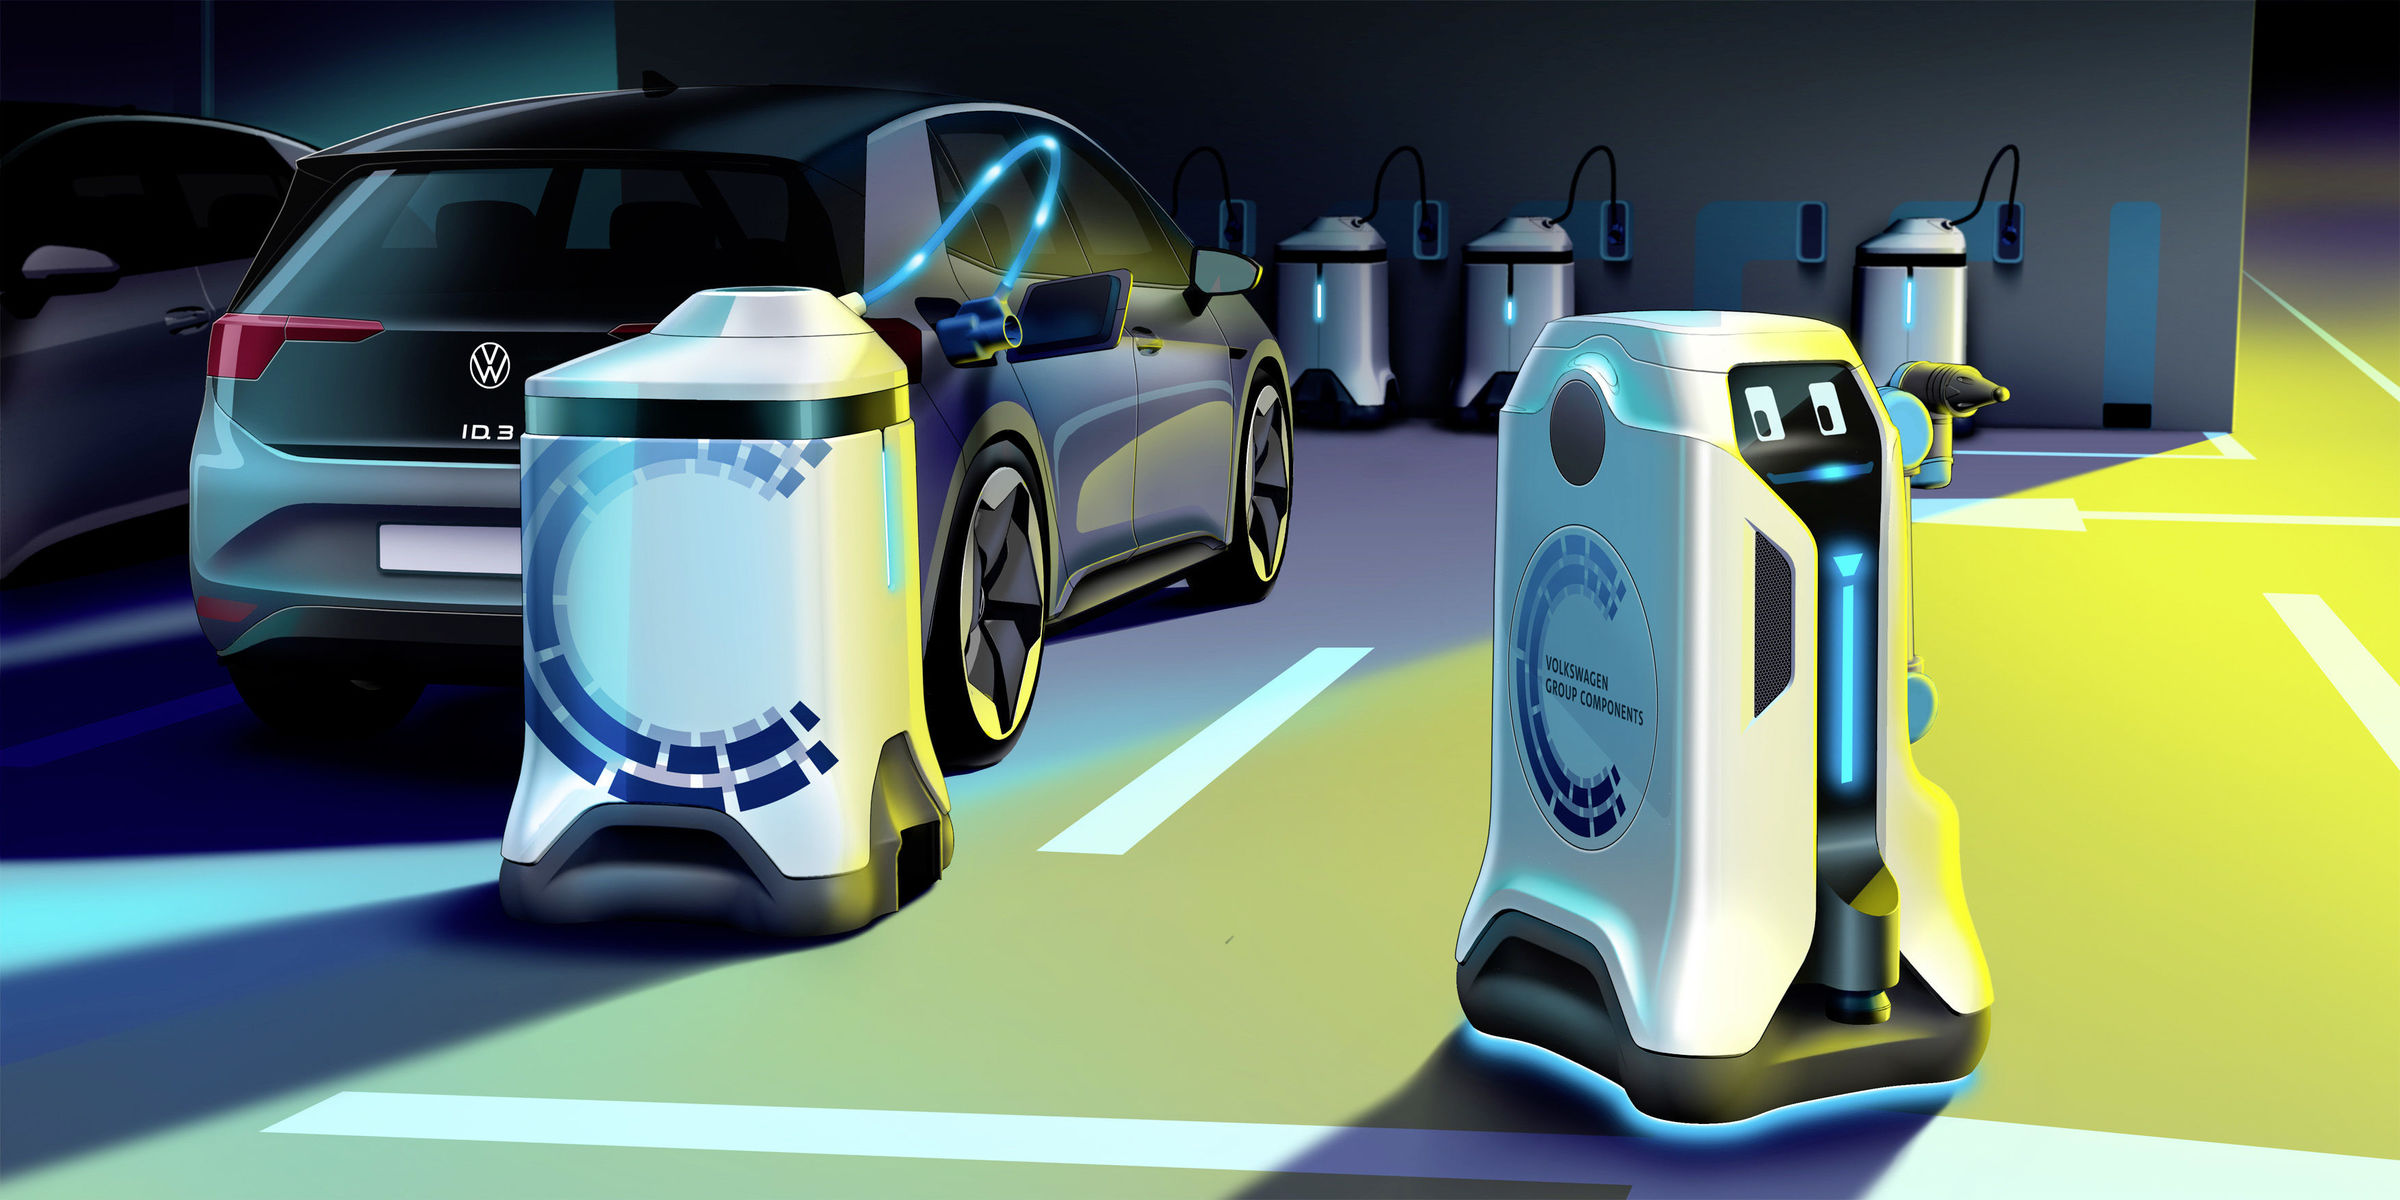 ابتكرت فولكس واجن روبوتًا متنقلًا لشحن السيارات الكهربائية في موقف السيارات